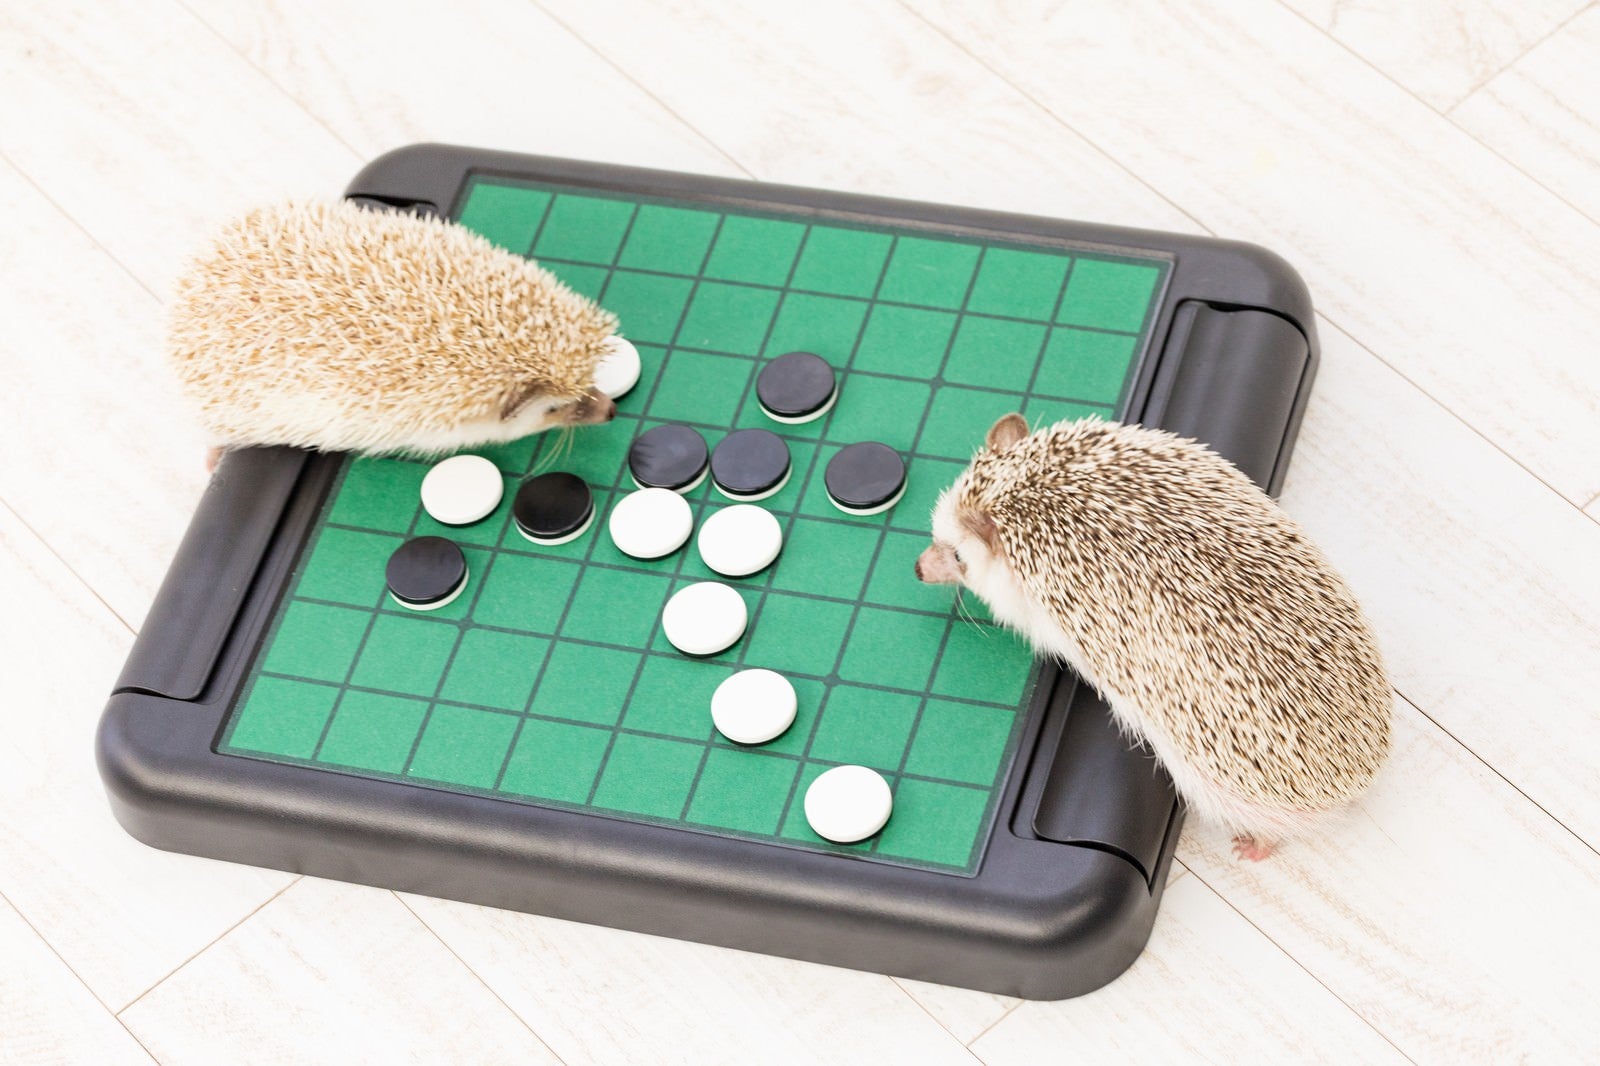 「テーブルゲーム（オセロ）で白熱するハリネズミ」の写真